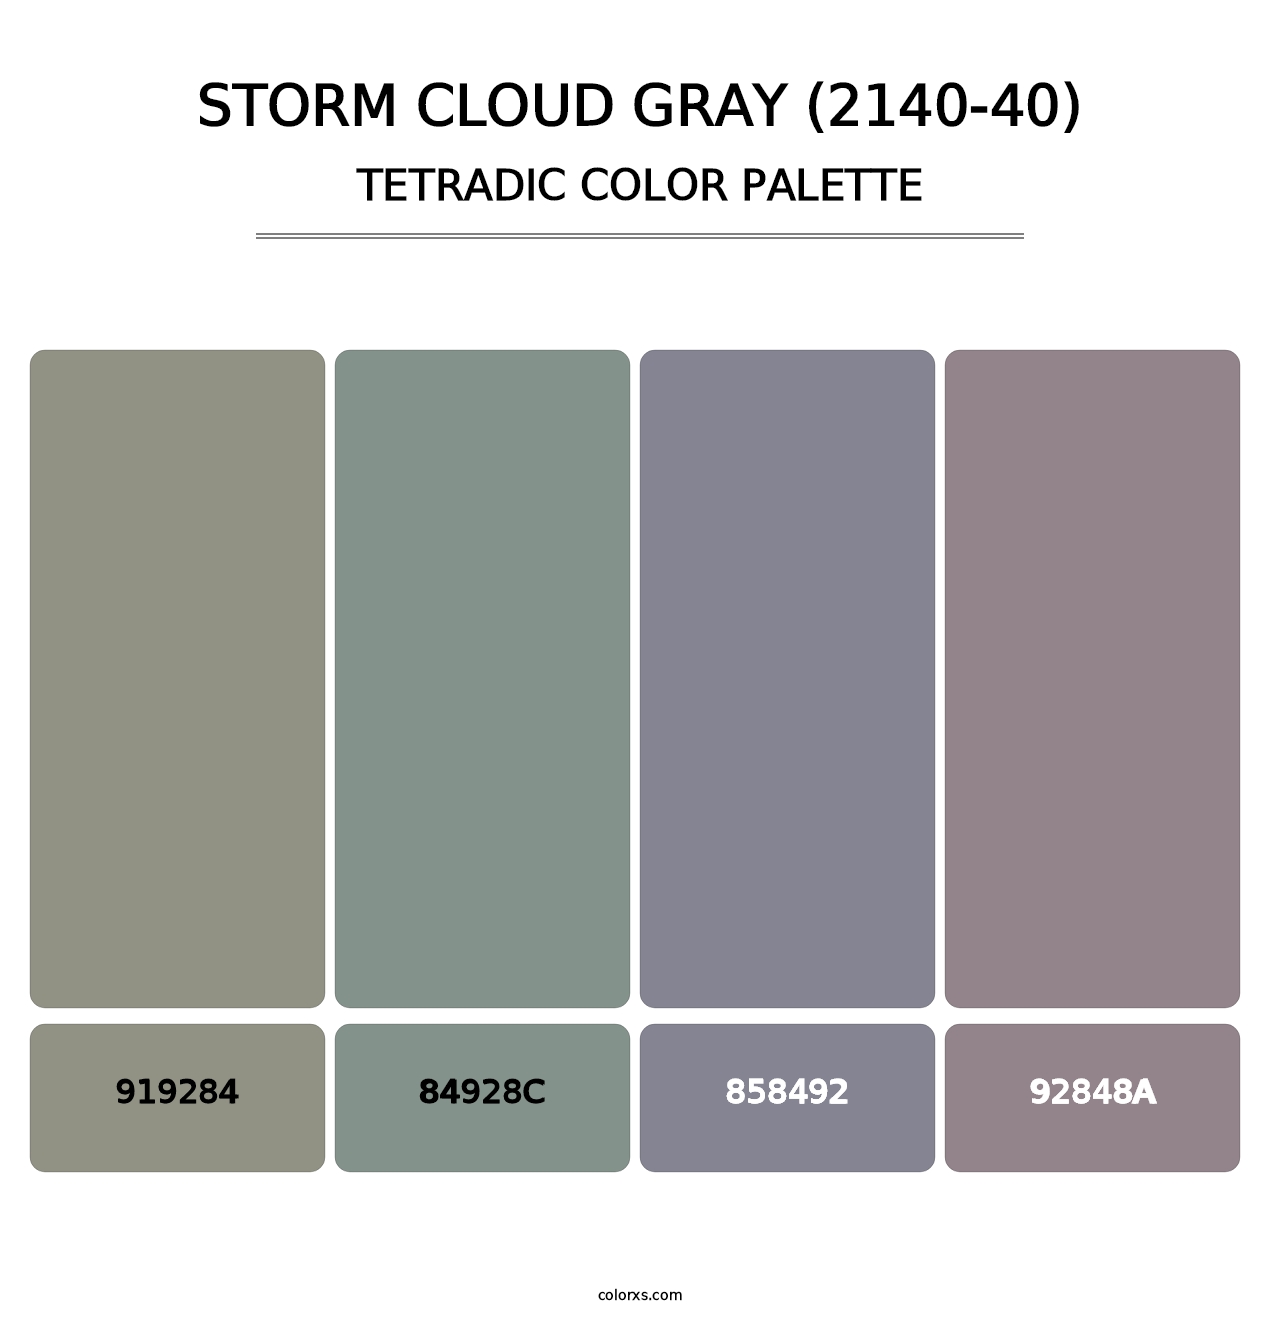 Storm Cloud Gray (2140-40) - Tetradic Color Palette